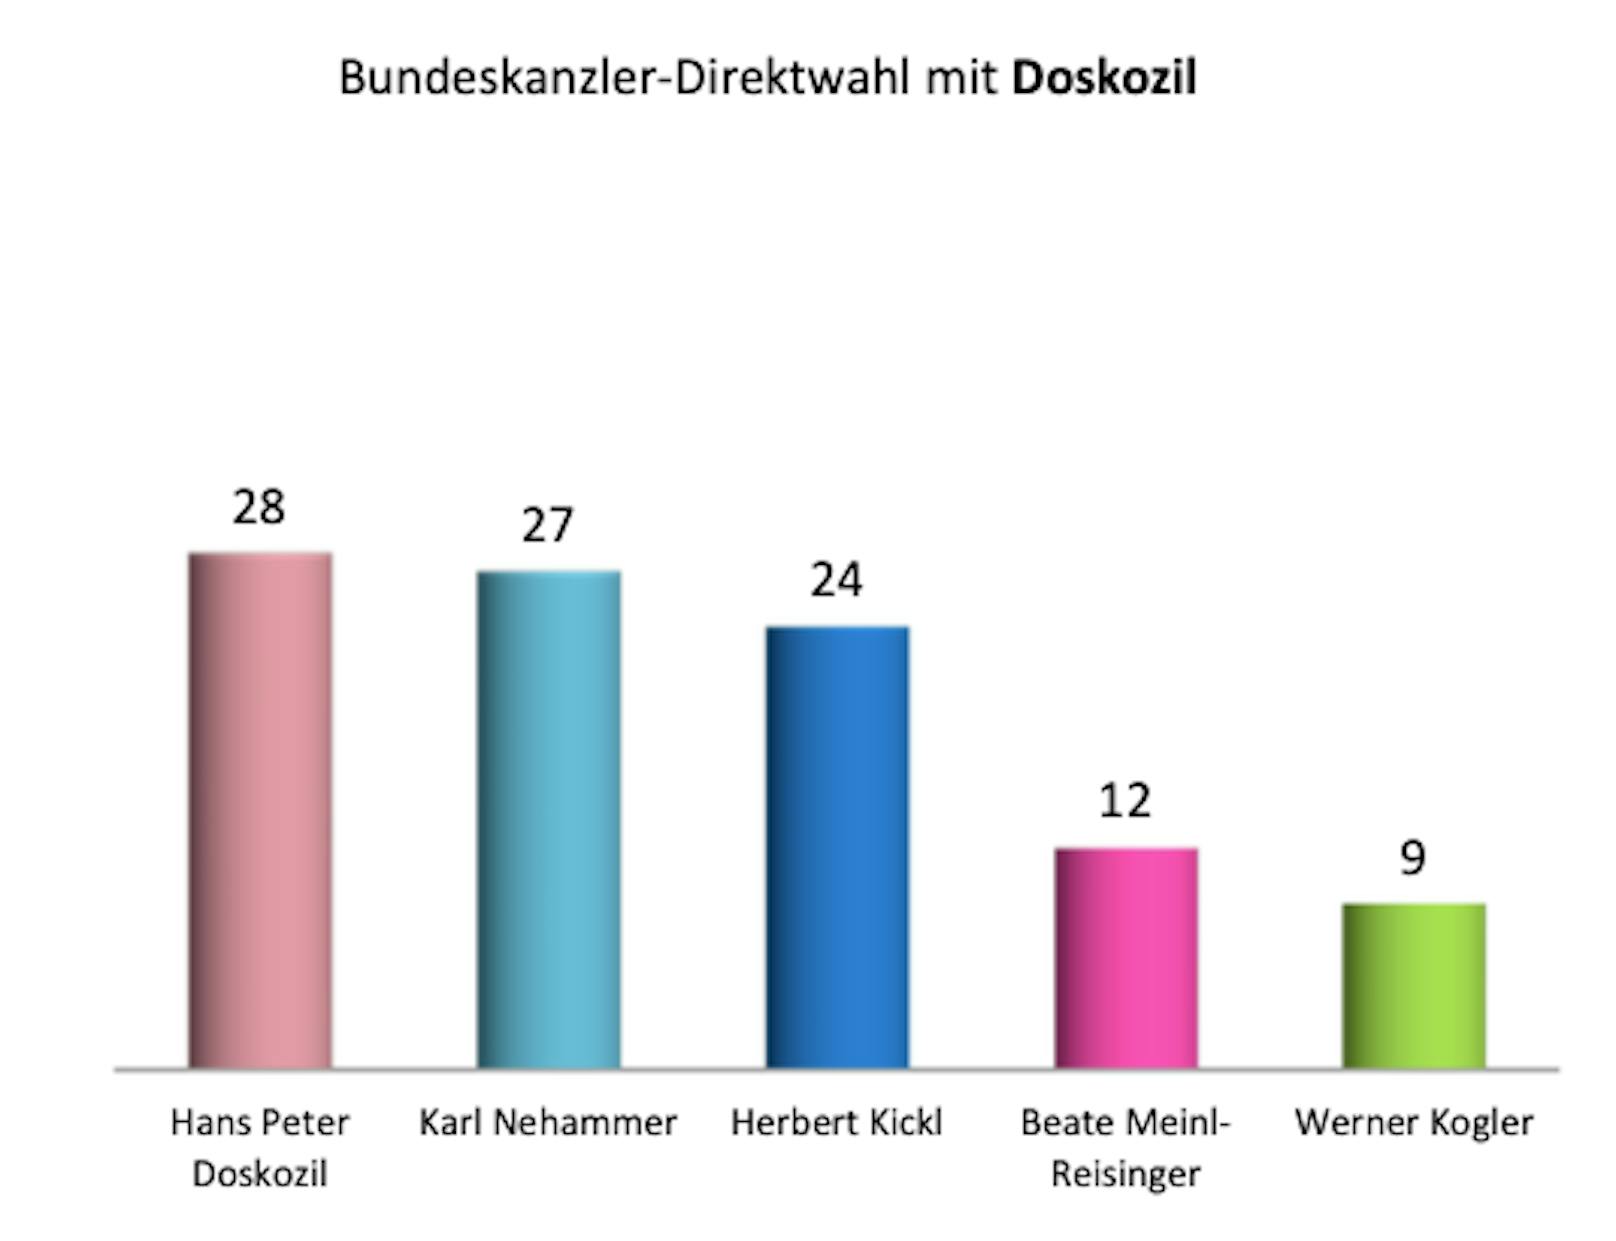 Mit Doksozil an der Spitze würde die SPÖ eine Kanzler-Direktwahl hingegen gewinnen.